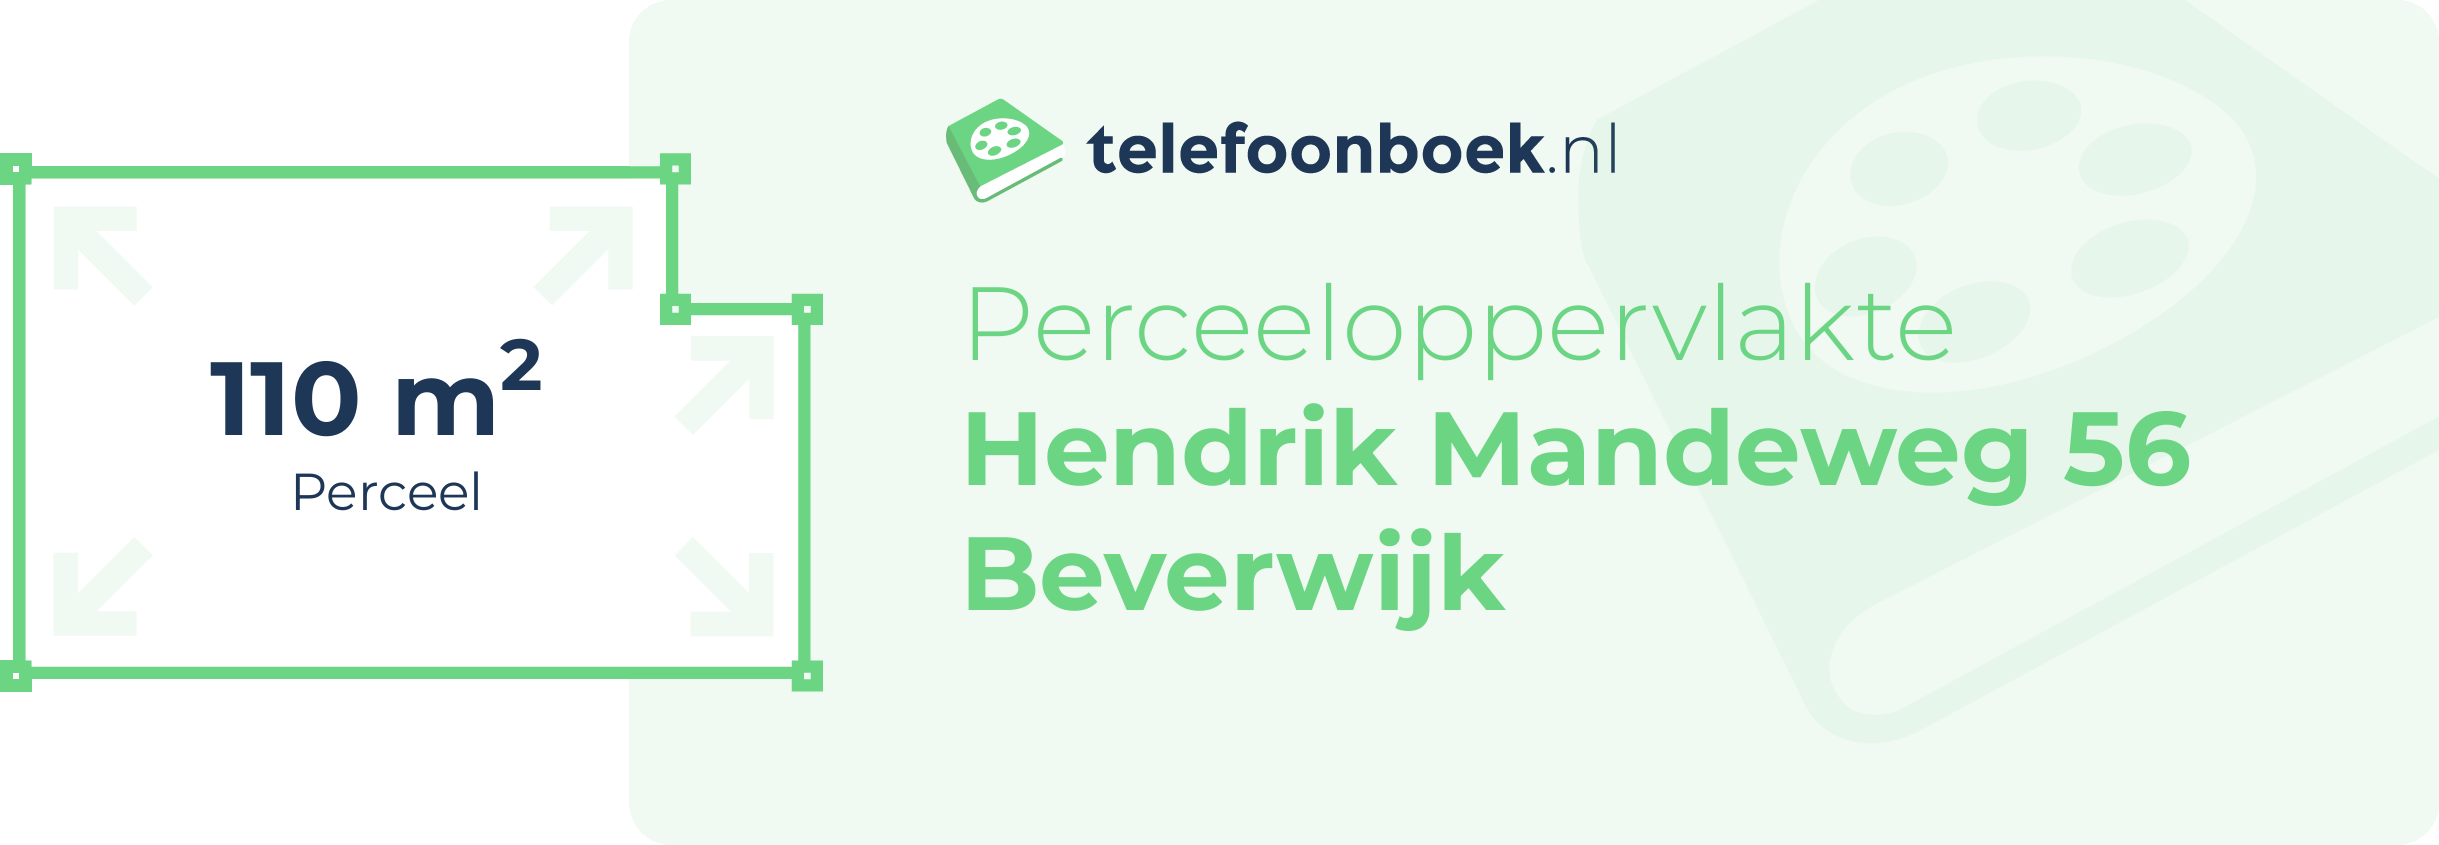 Perceeloppervlakte Hendrik Mandeweg 56 Beverwijk